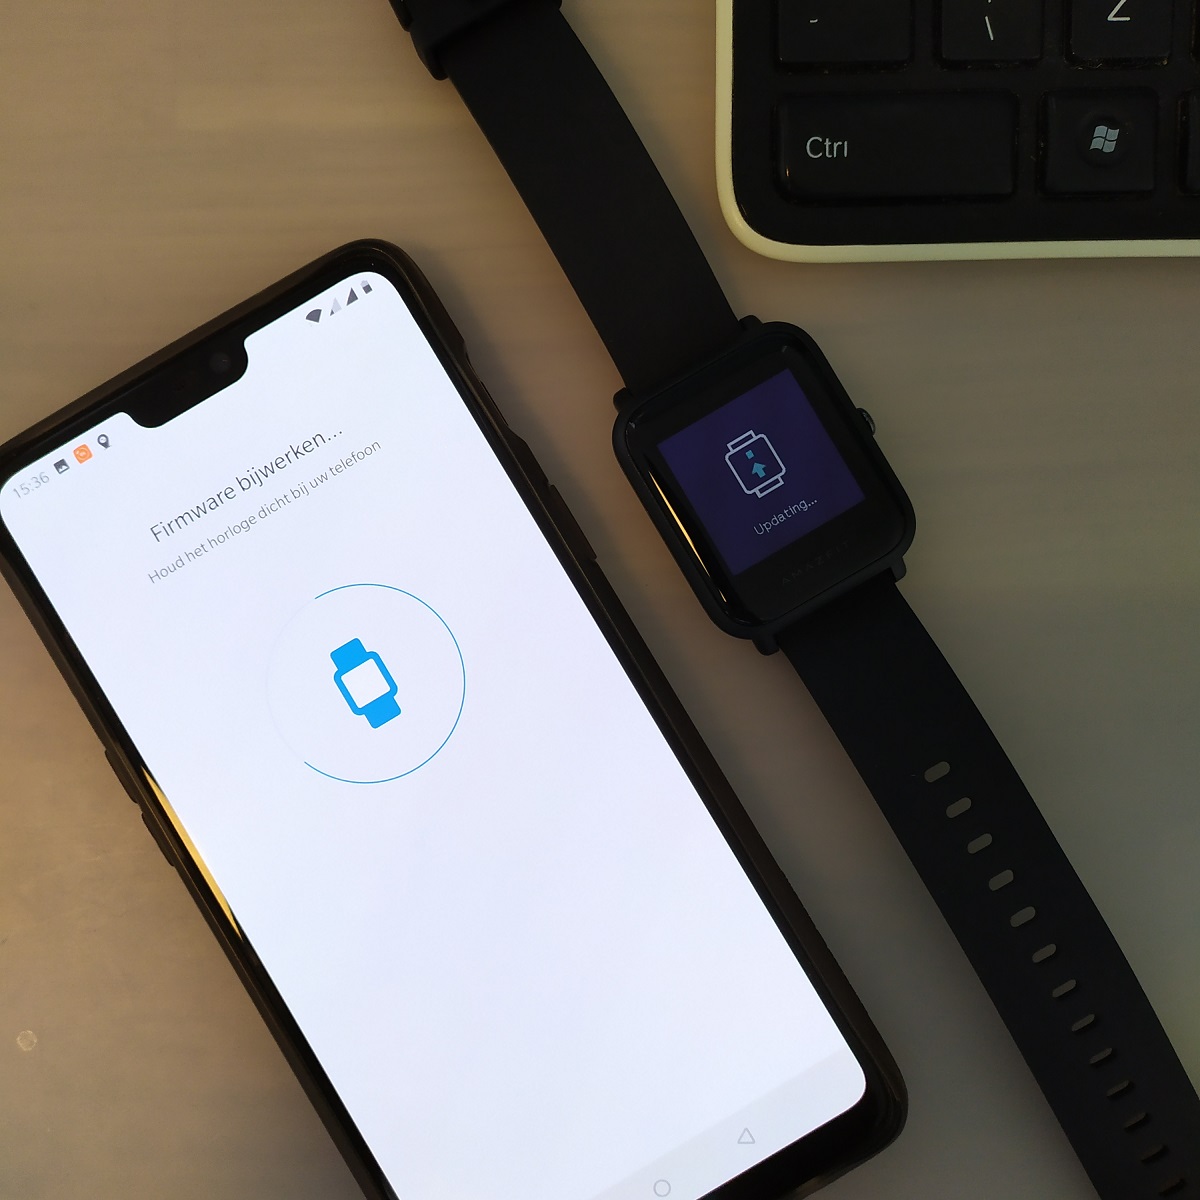 Xiaomi Amazfit BIP Lite Smartwatch